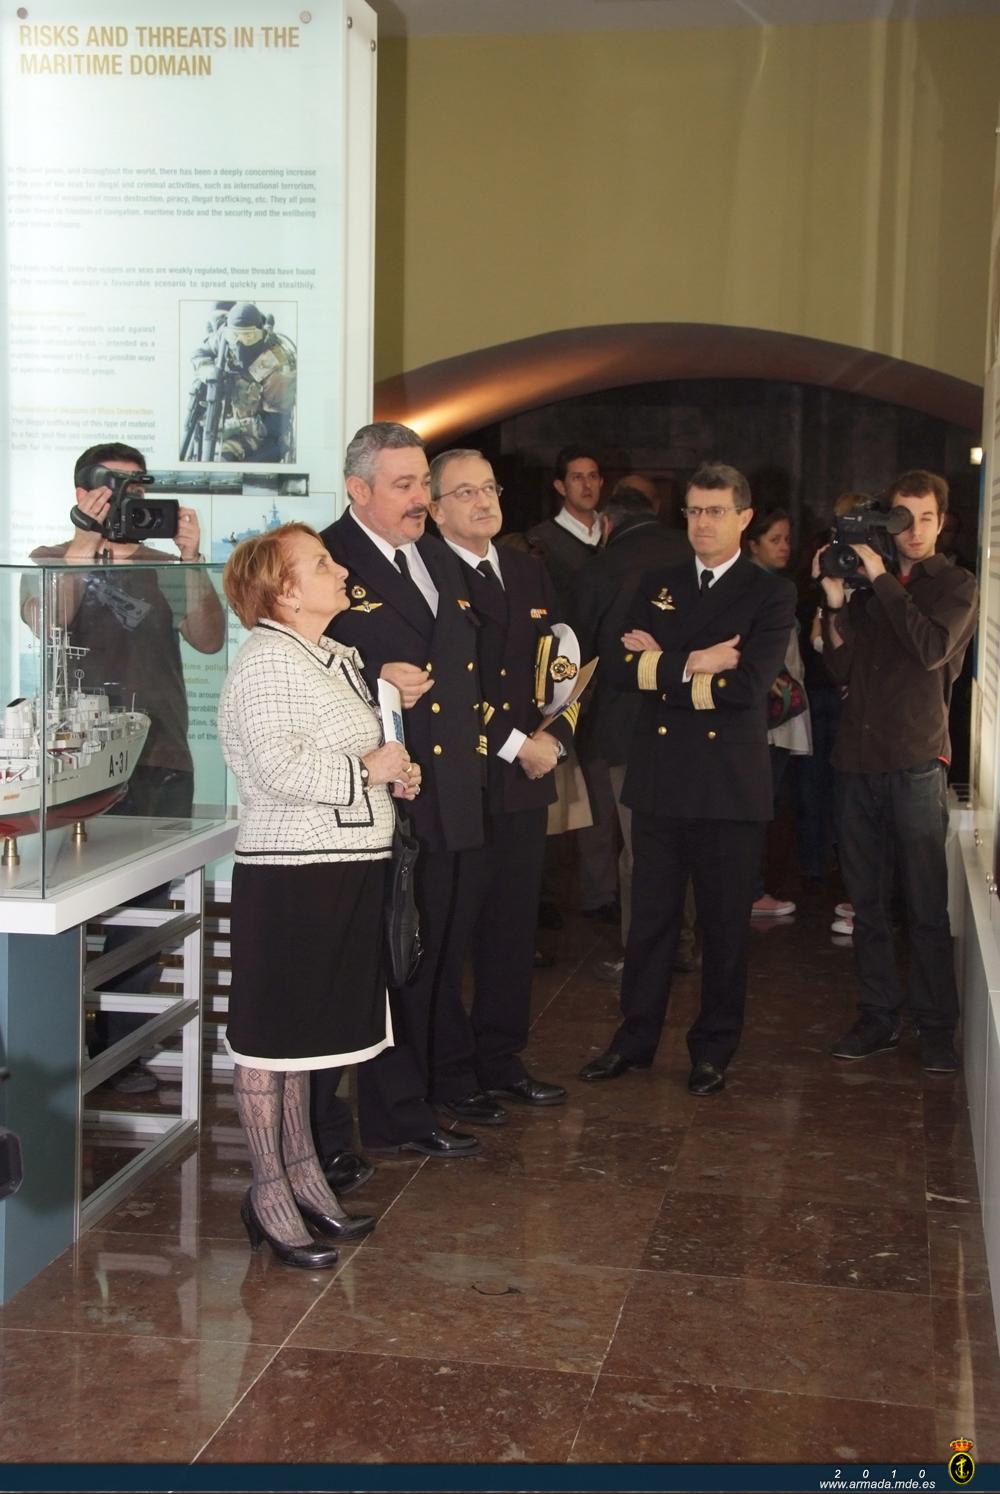 La alcaldesa de Gijón, Paz Fernández Felgueroso, ha inaugurado con su visita la exposición situada junto al Teatro Principal